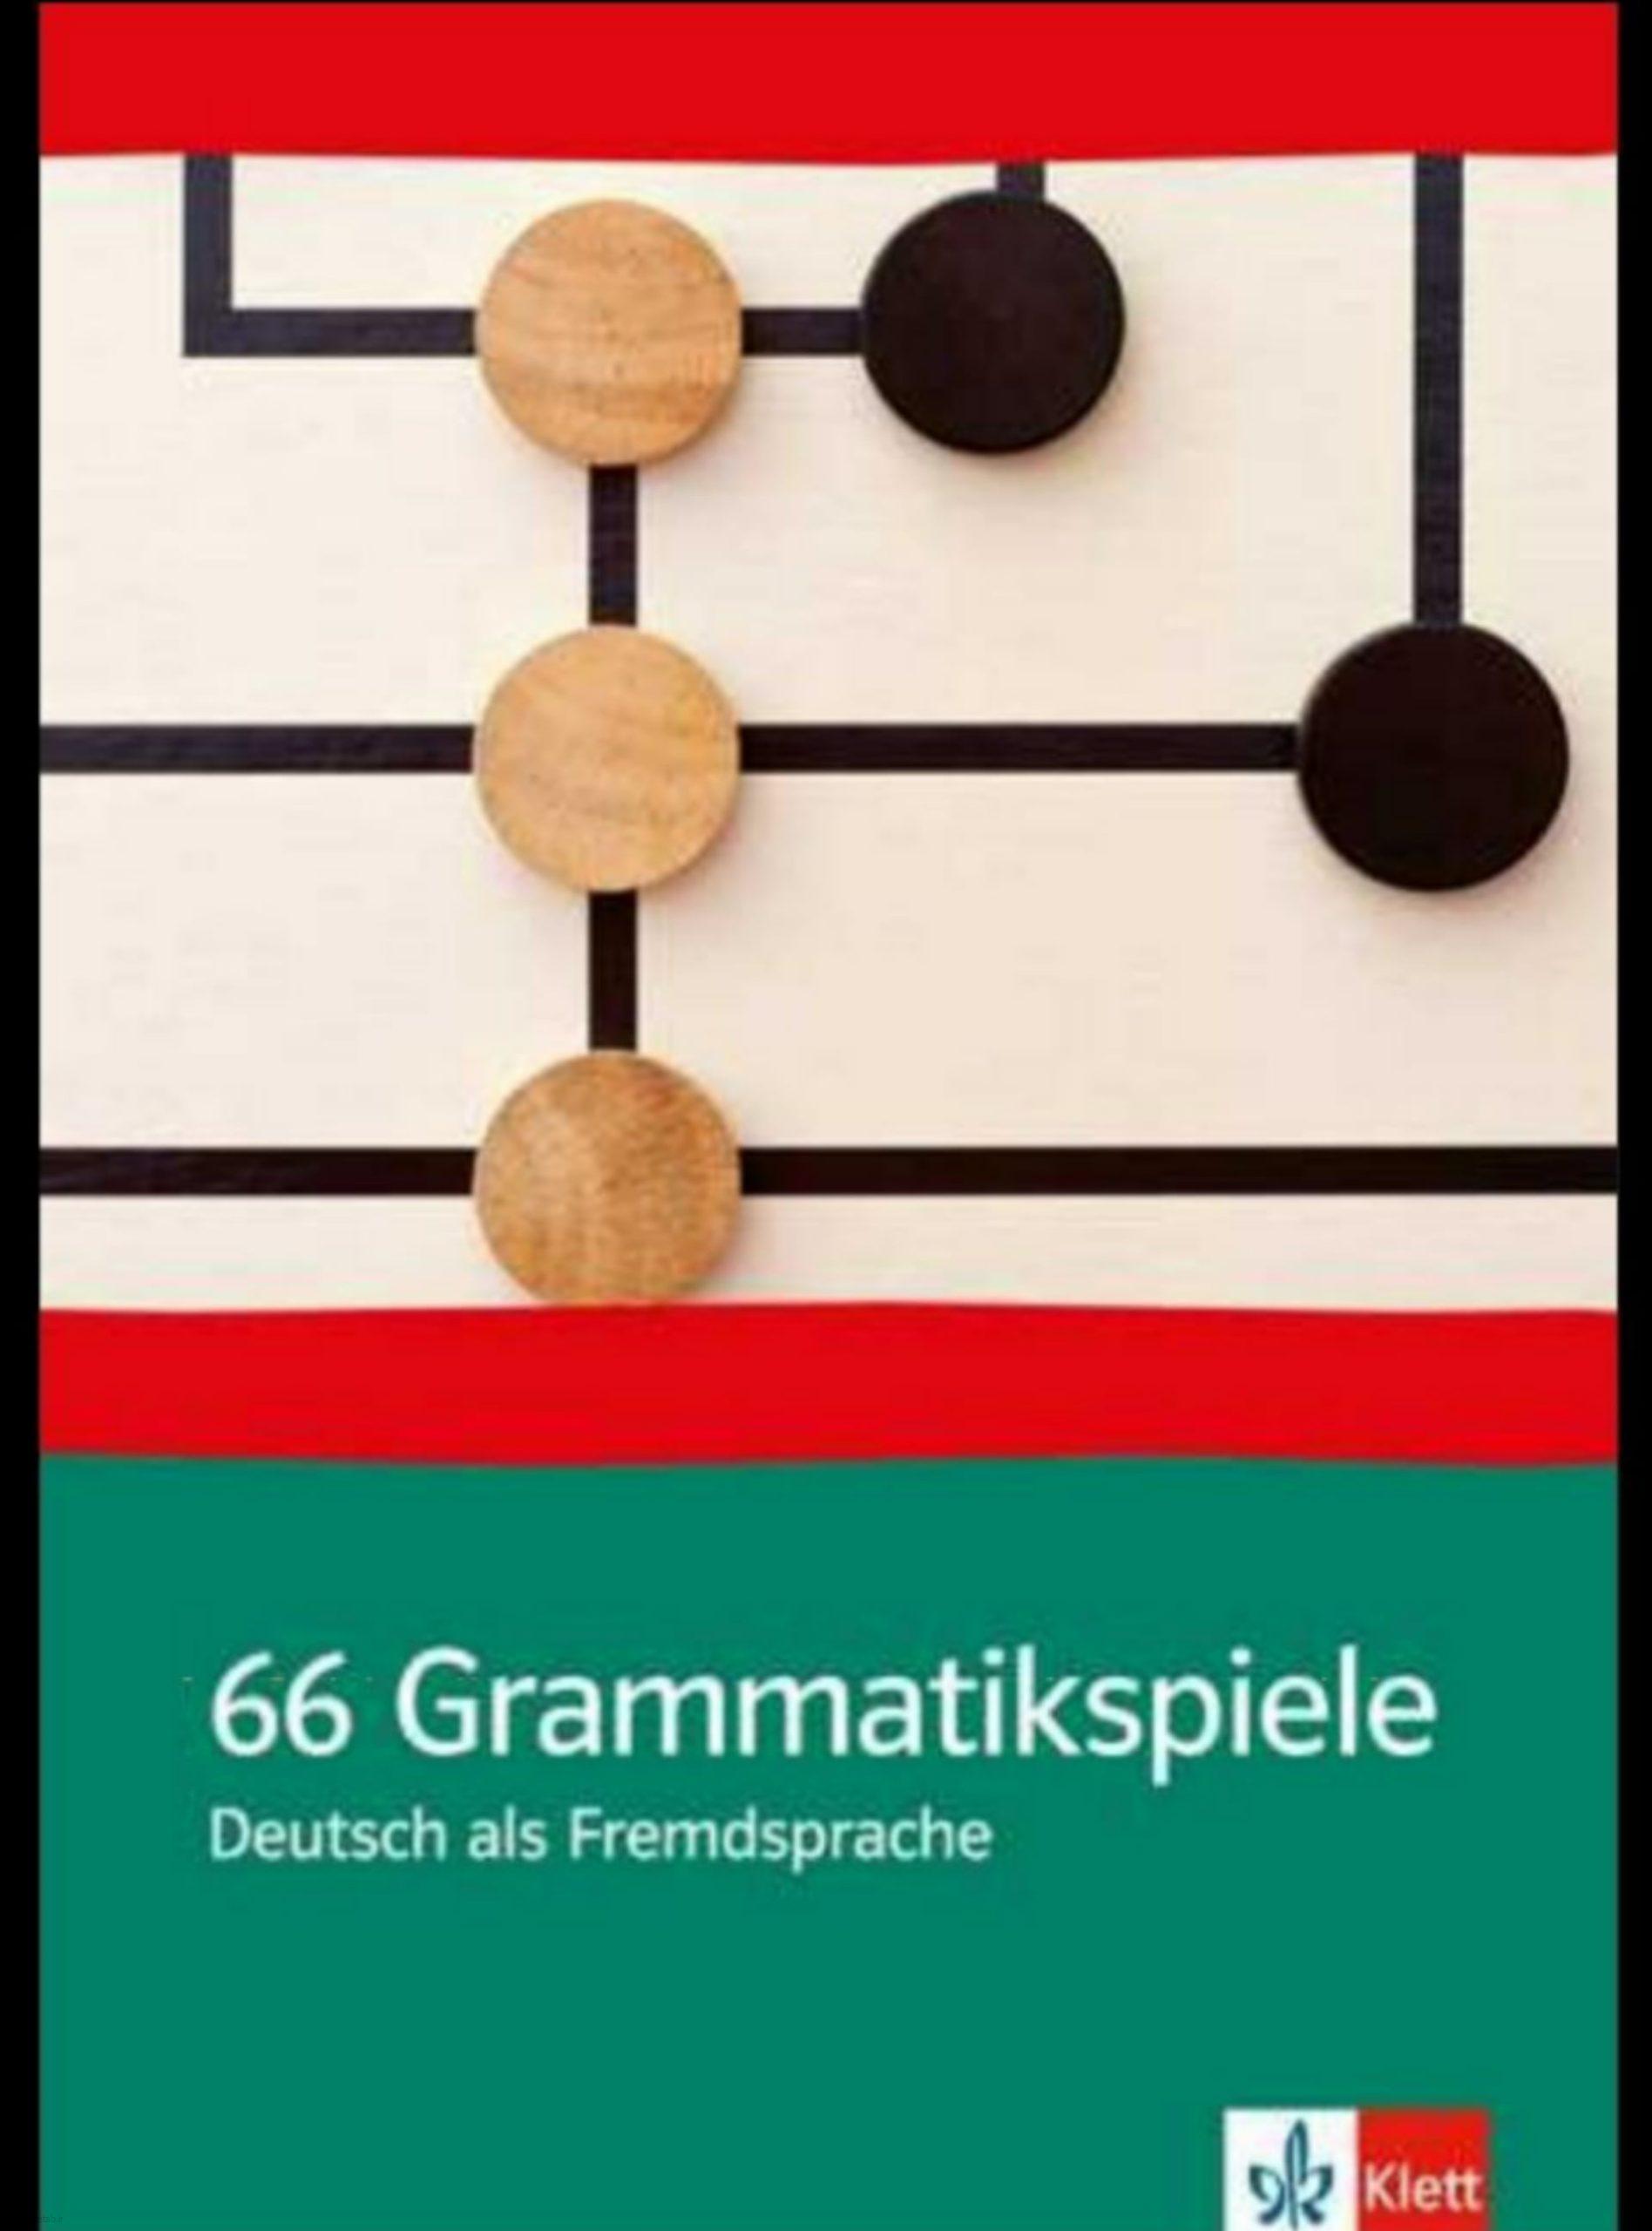 دانلود کتاب آلمانی66 grammatikspiele